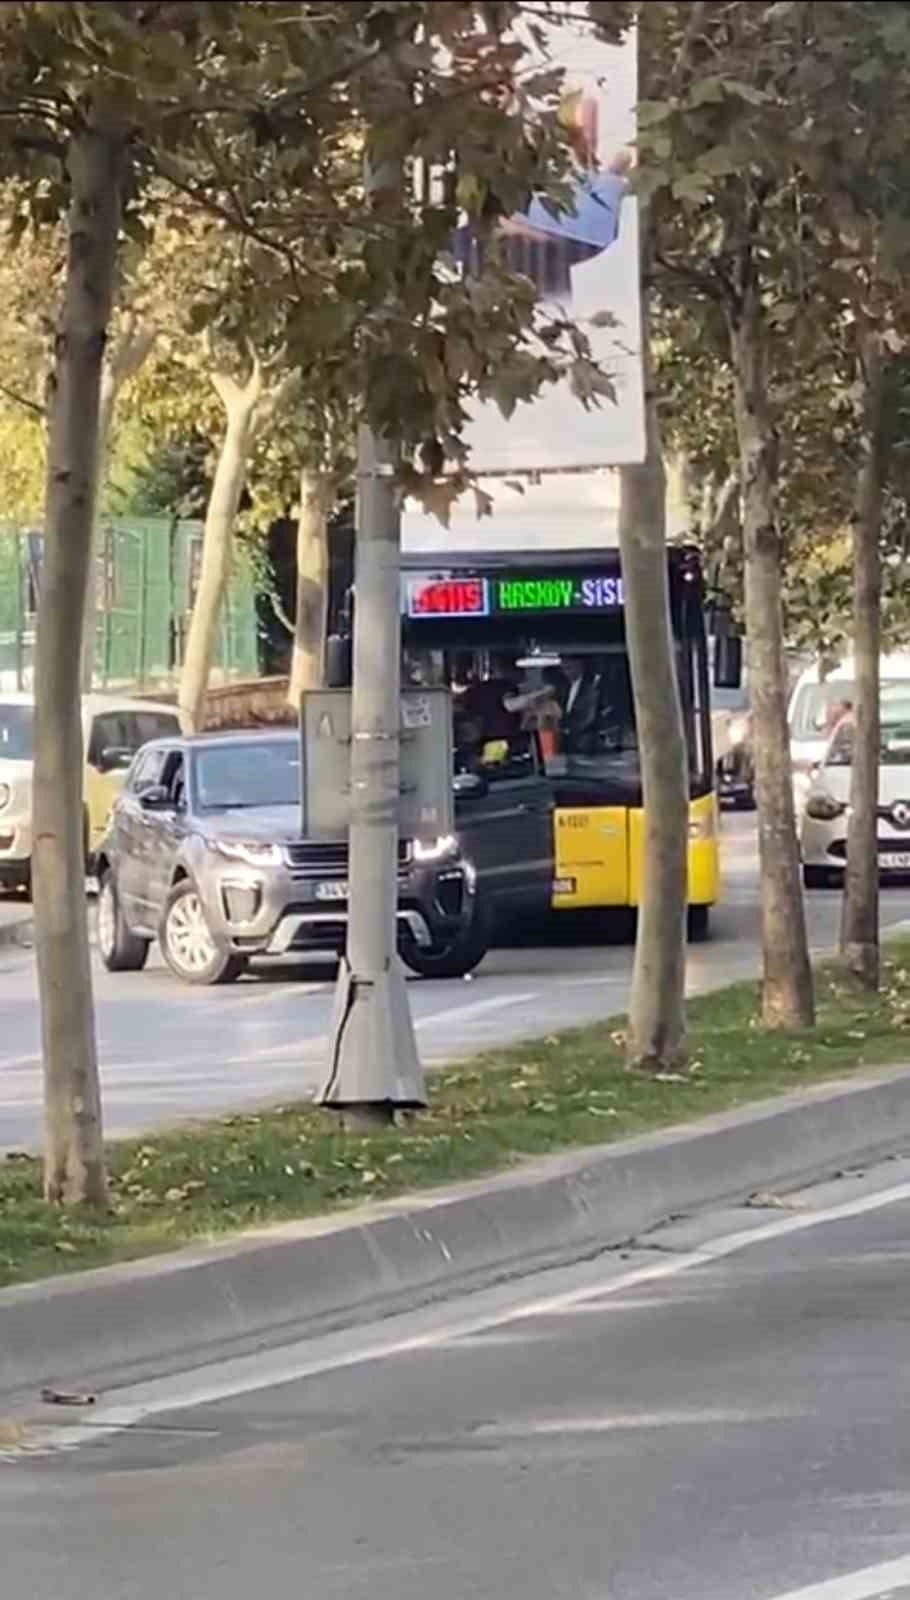 Beyoğlu’da İETT otobüsünün önünün kesilmesi olayının detayları: Eşini ve bebeği için önünü kesmiş
